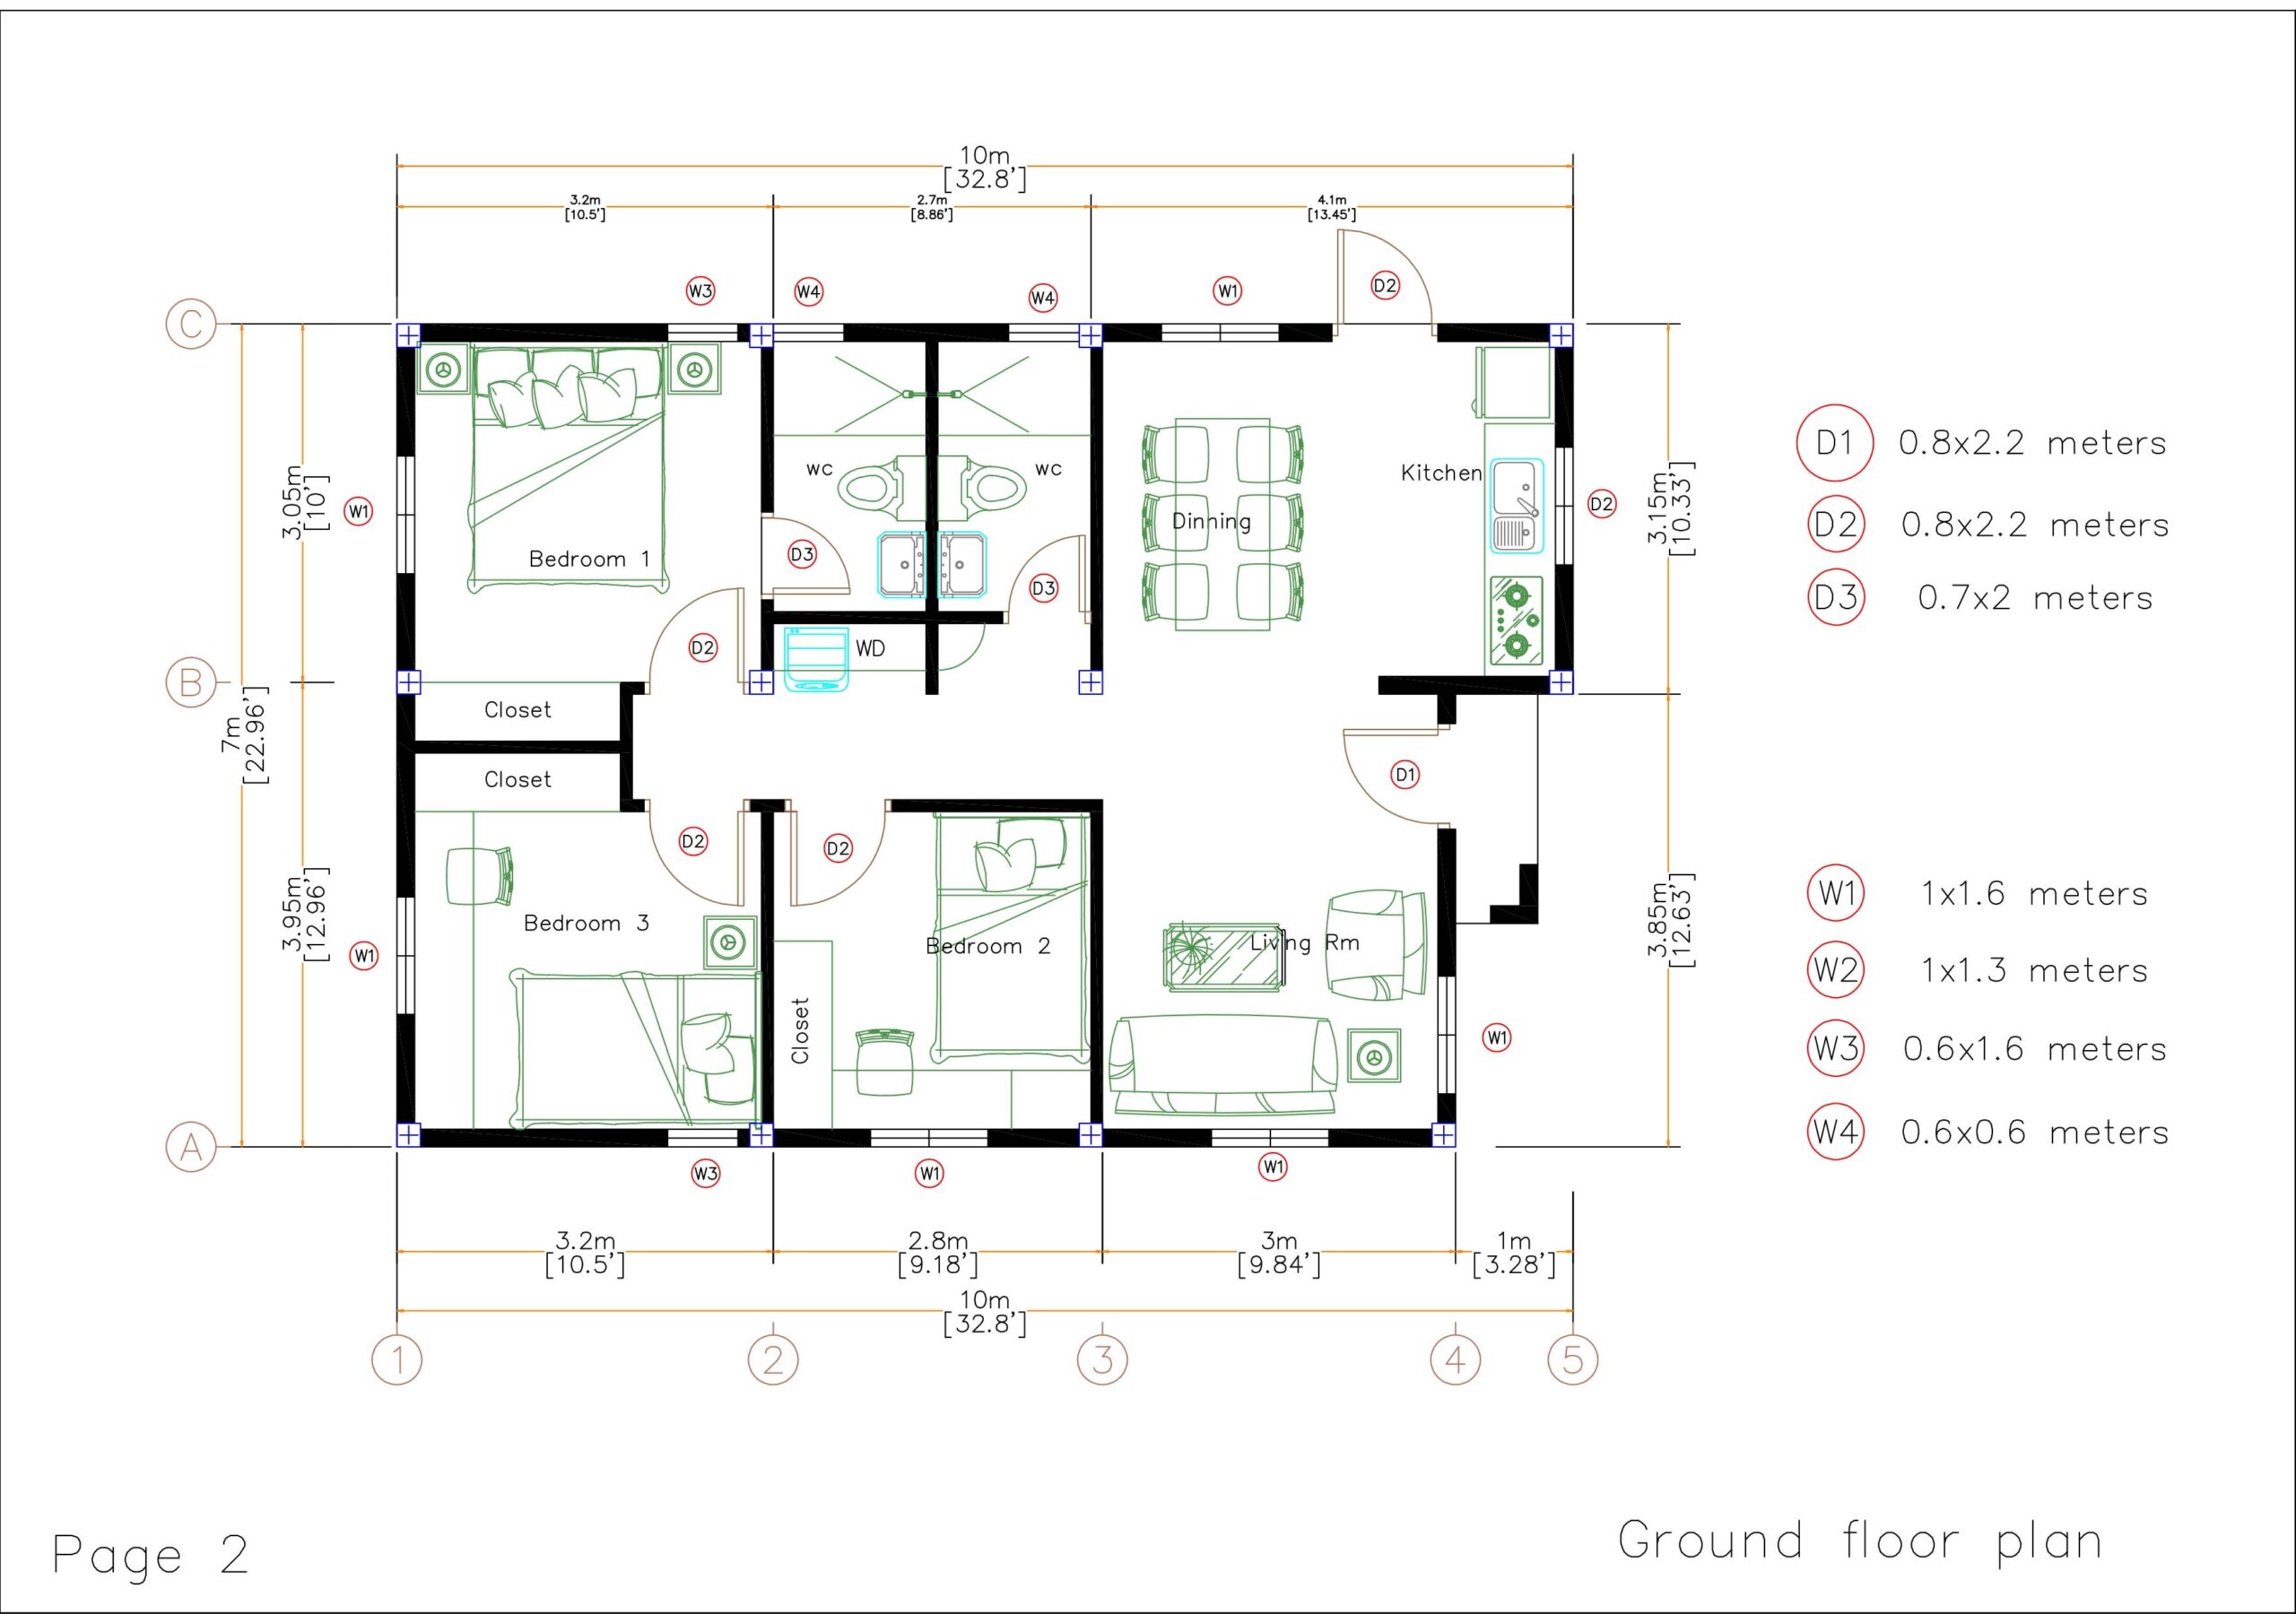 House Design 3d 7x10 Meter 23x33 Feet 3 Bedrooms hip Roof layout floor plan